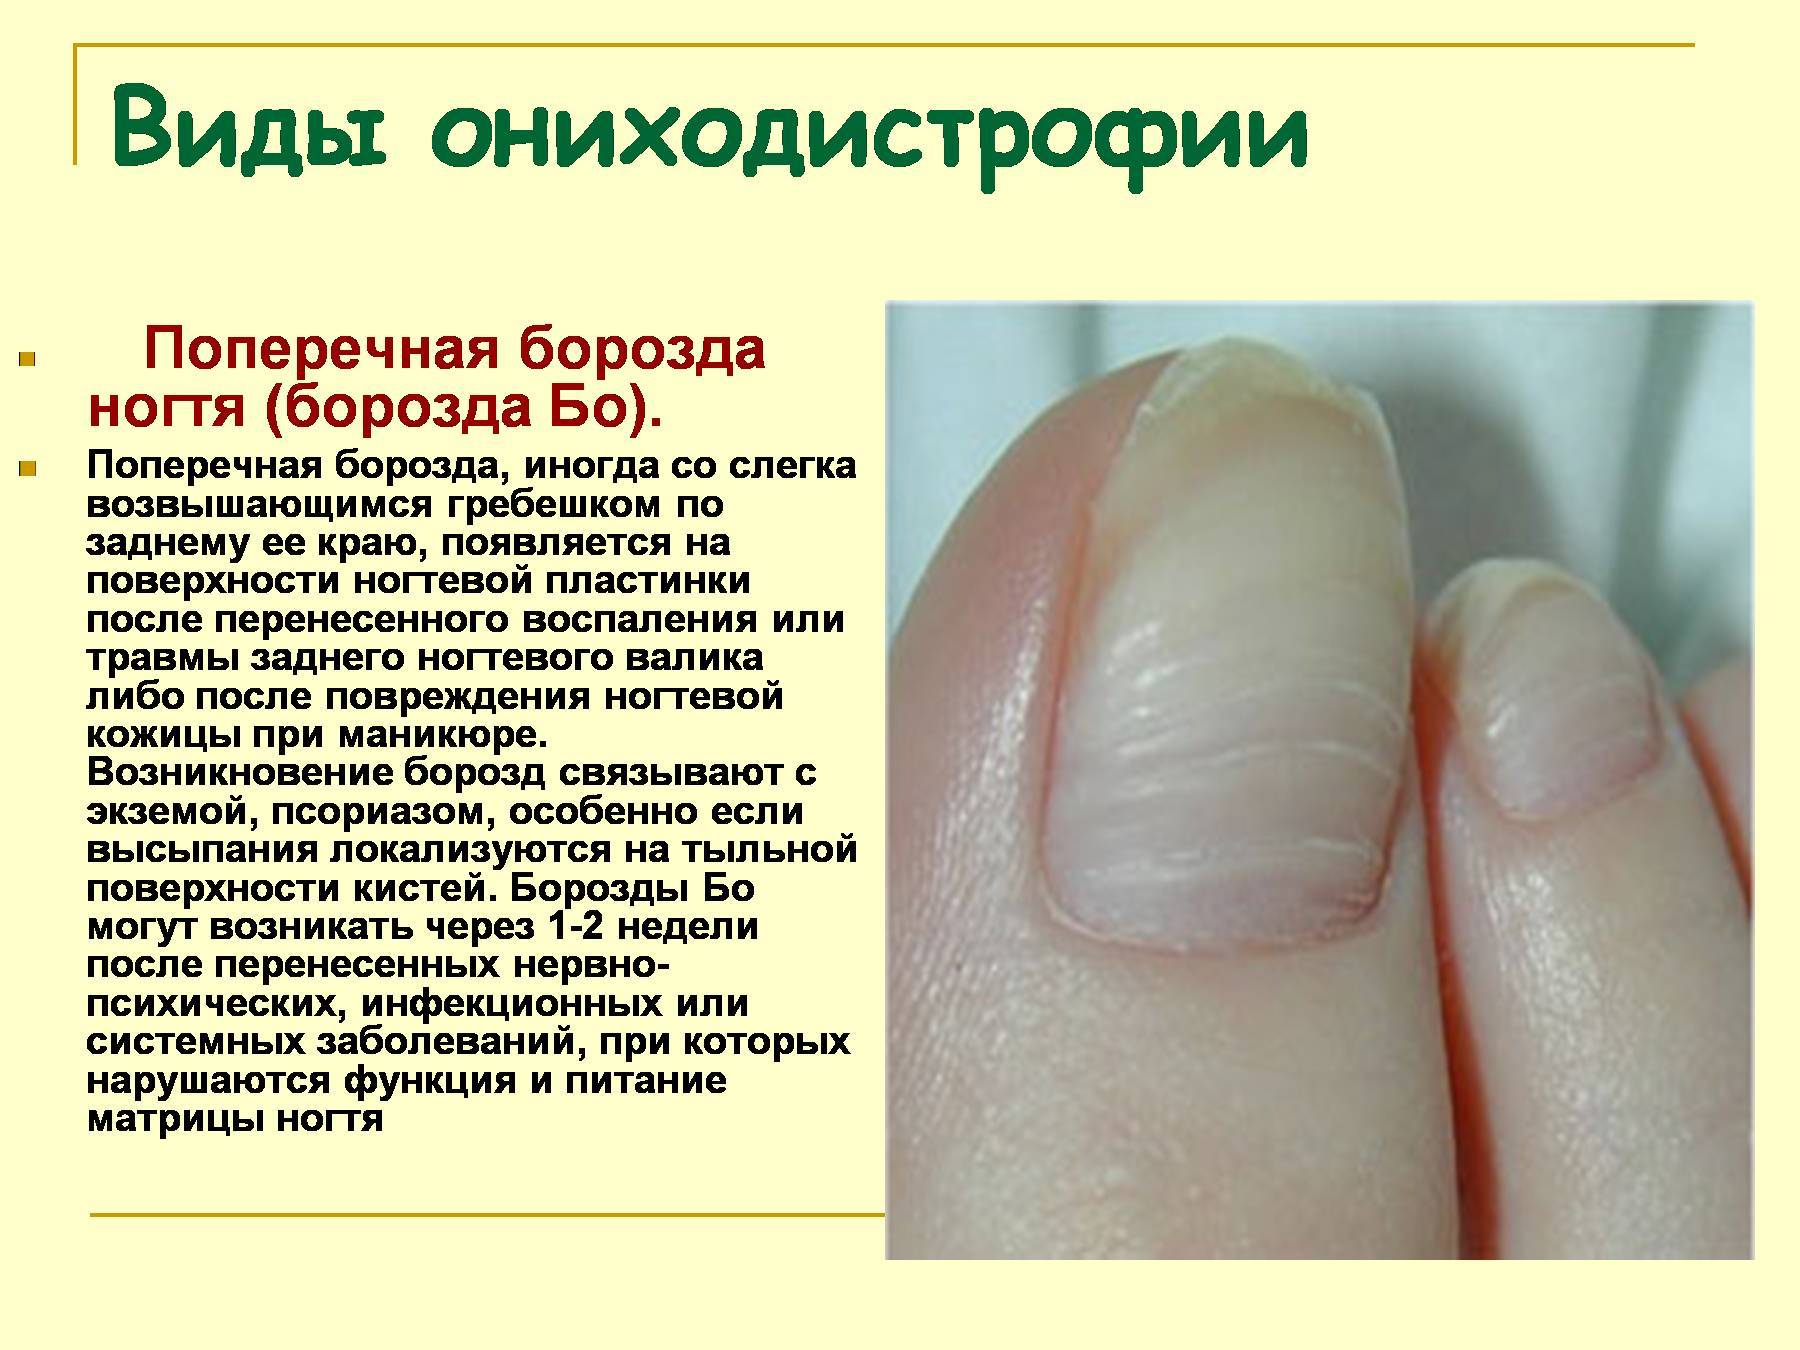 Избавление от онихорексиса (продольное расслоение) ногтевой пластины в центре подологии podolab